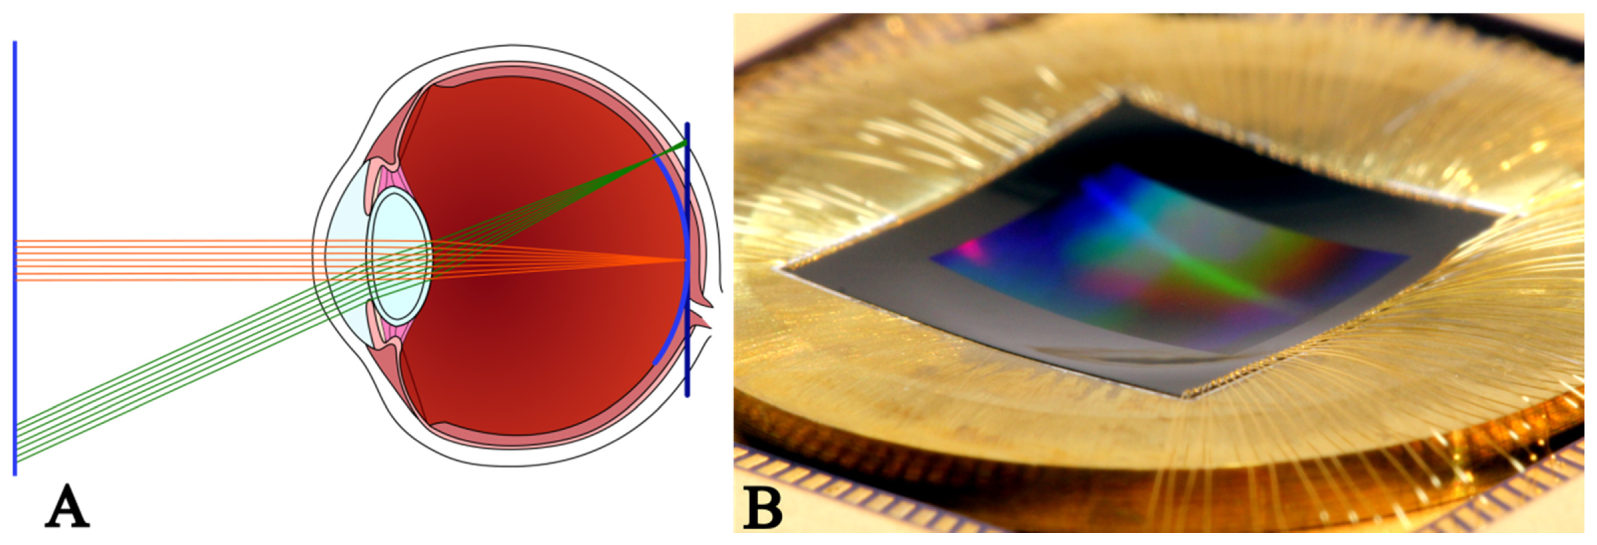 A ideia central do sensor curvo está na própria curvatura do olho humano e esse formato permitiria evitar problemas apresentados pelas lentes, como distorção de campo, aberração cromática e astigmatismo 